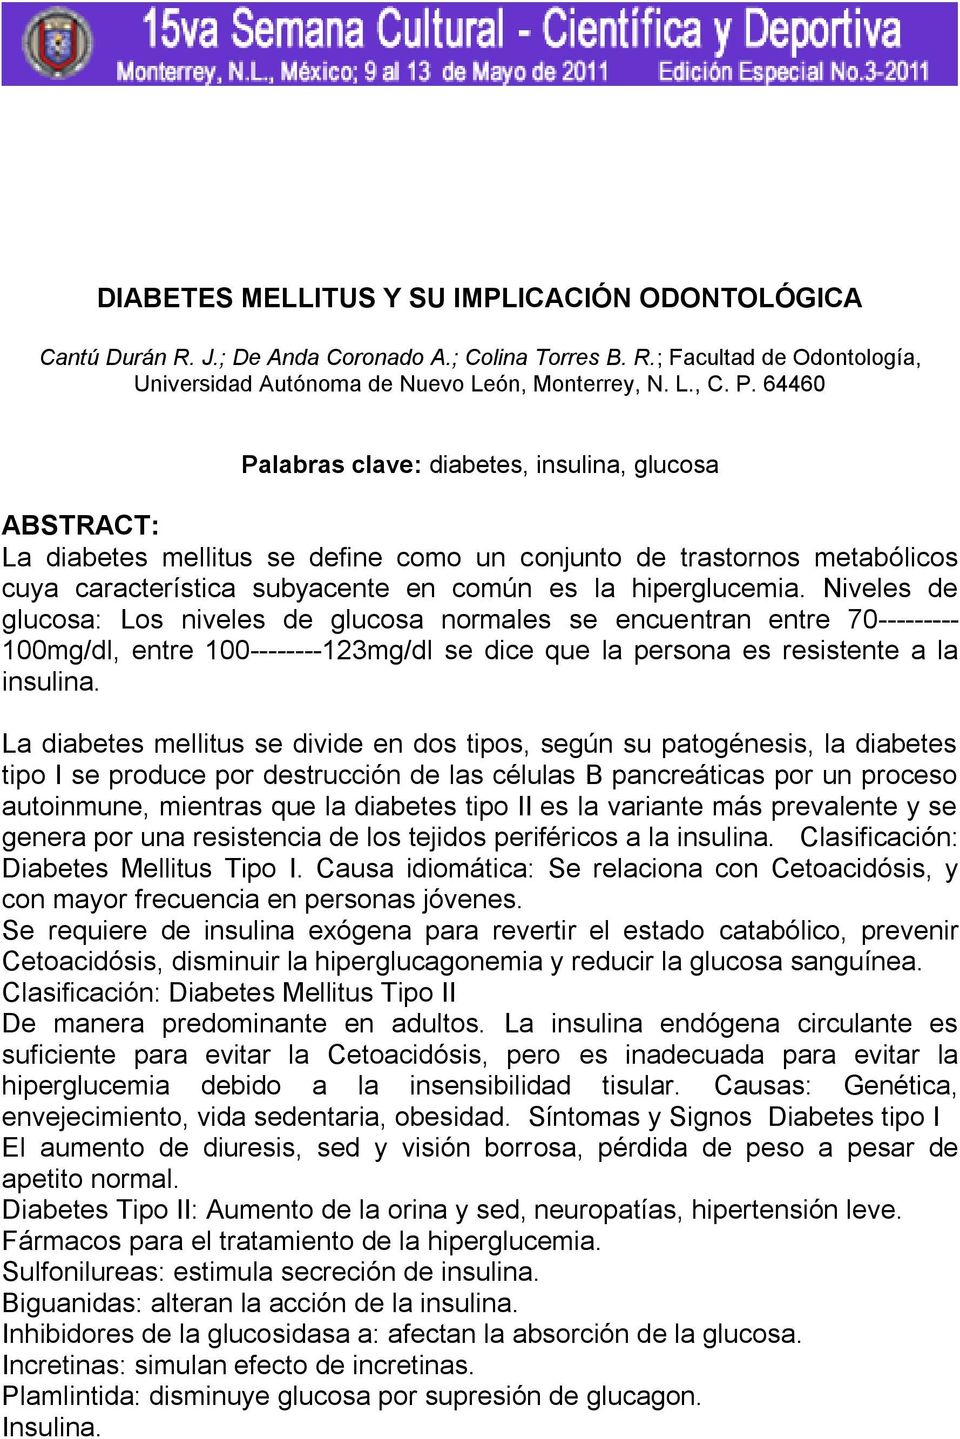 Niveles de glucosa: Los niveles de glucosa normales se encuentran entre 70--------- 100mg/dl, entre 100--------123mg/dl se dice que la persona es resistente a la insulina.